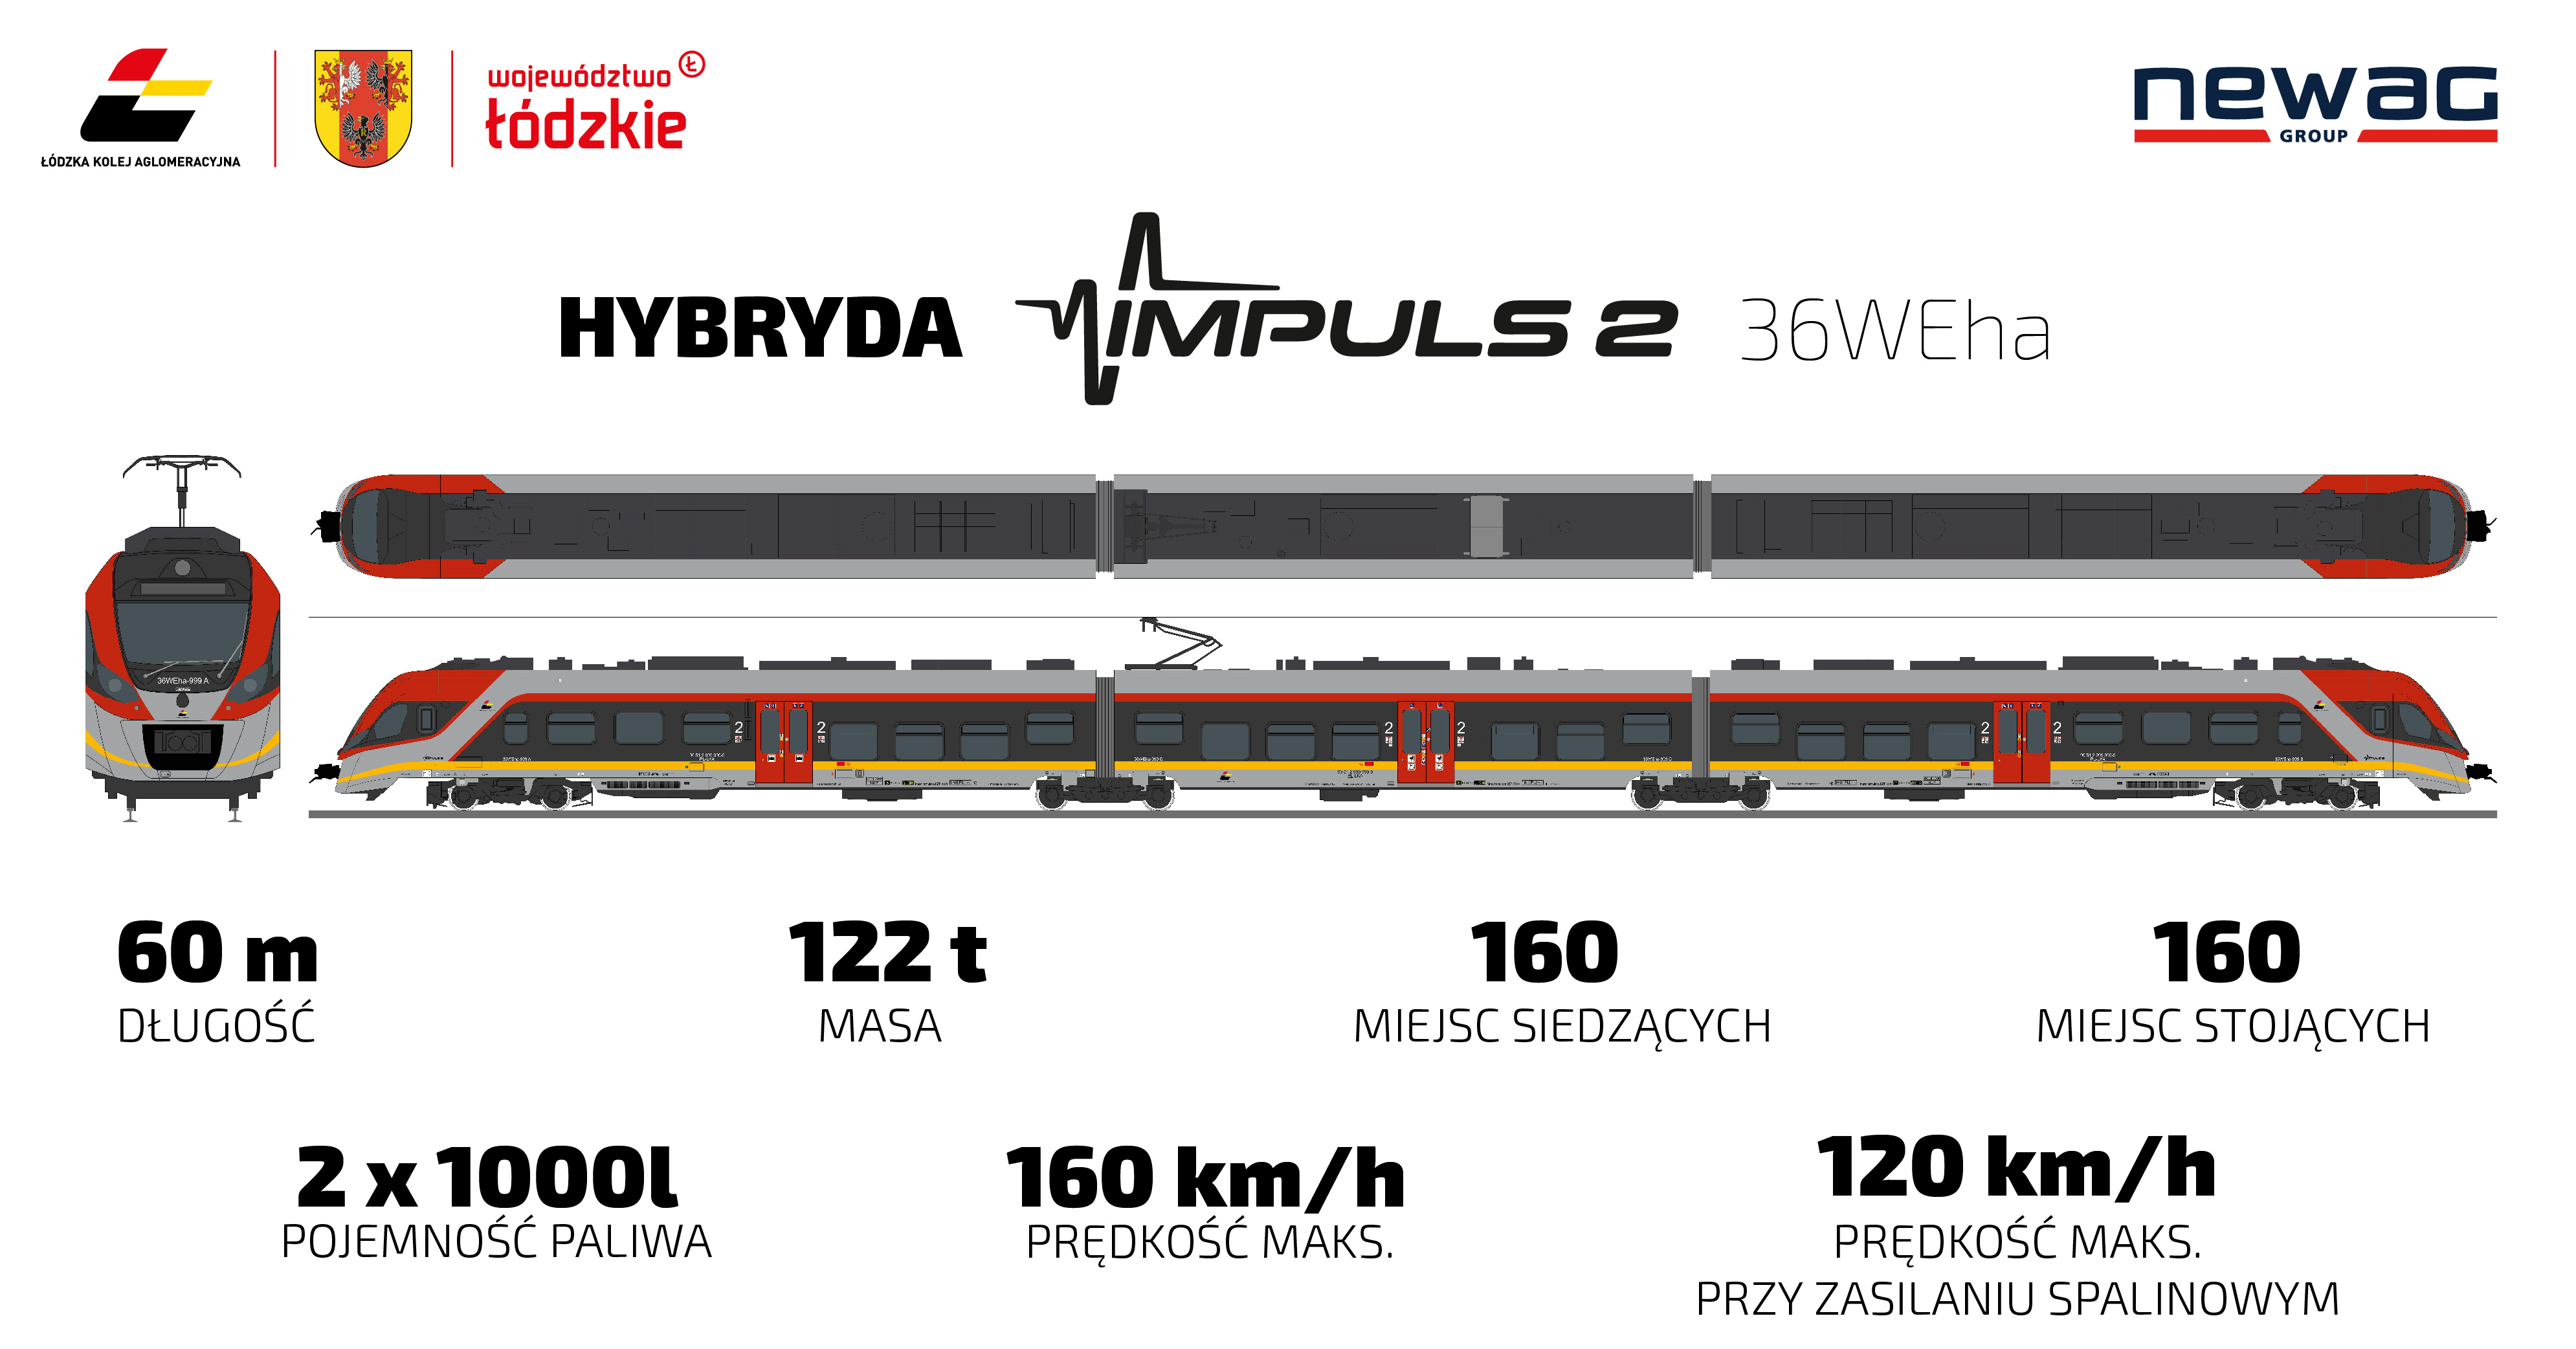 Rysunek techiczny pociągu i opis: długść 60 metrów, masa: 122 t, 160 miejsc siedzących, 160 miejsc stojących, pojemność paliwa 2x1000l, prędkość maks 160 km/h, prędkość maks przy zasilaniu spalinowym 120 km/h,